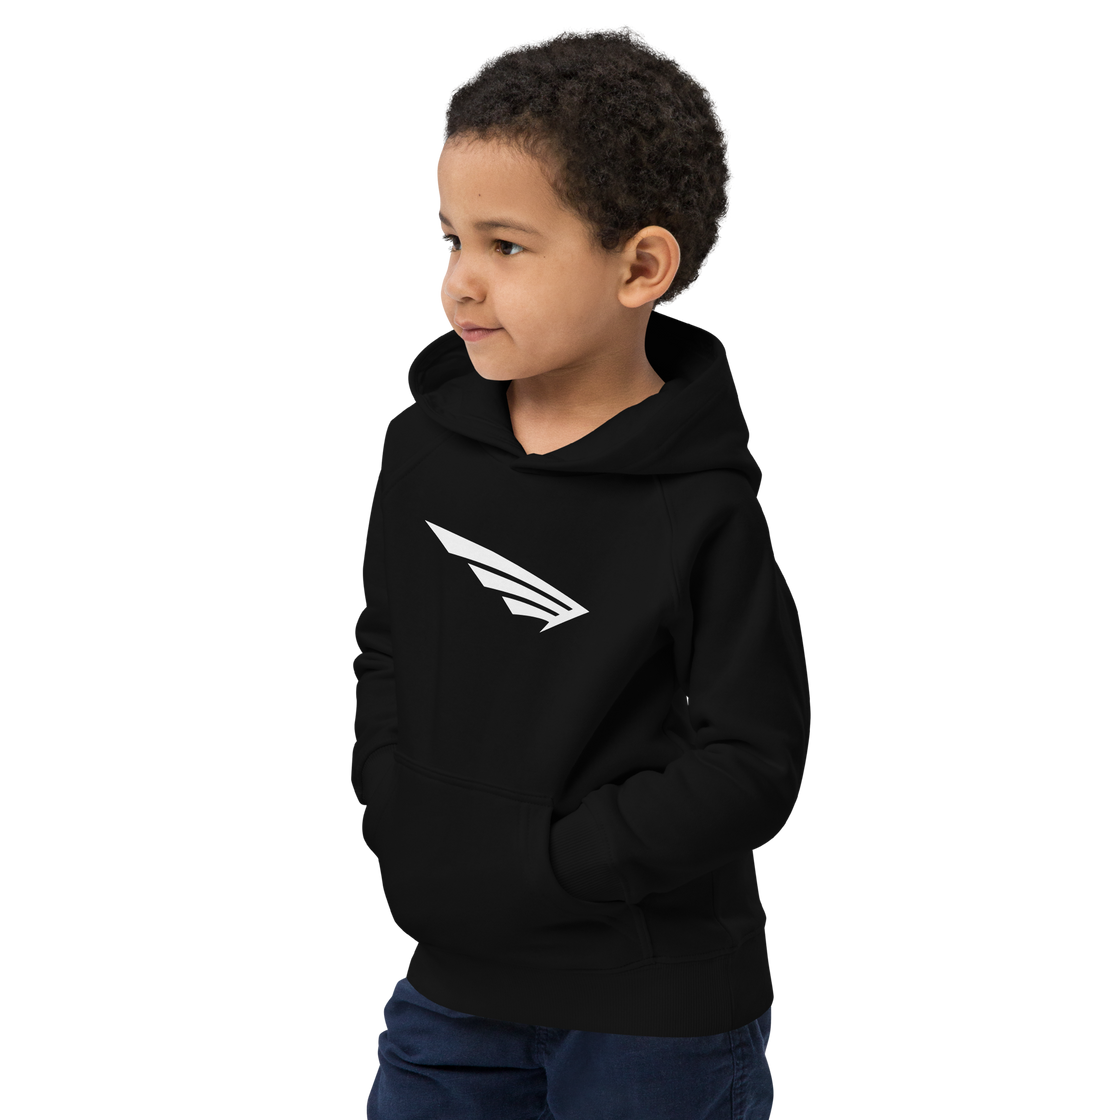 FLY³ Kids eco hoodie | Flycube